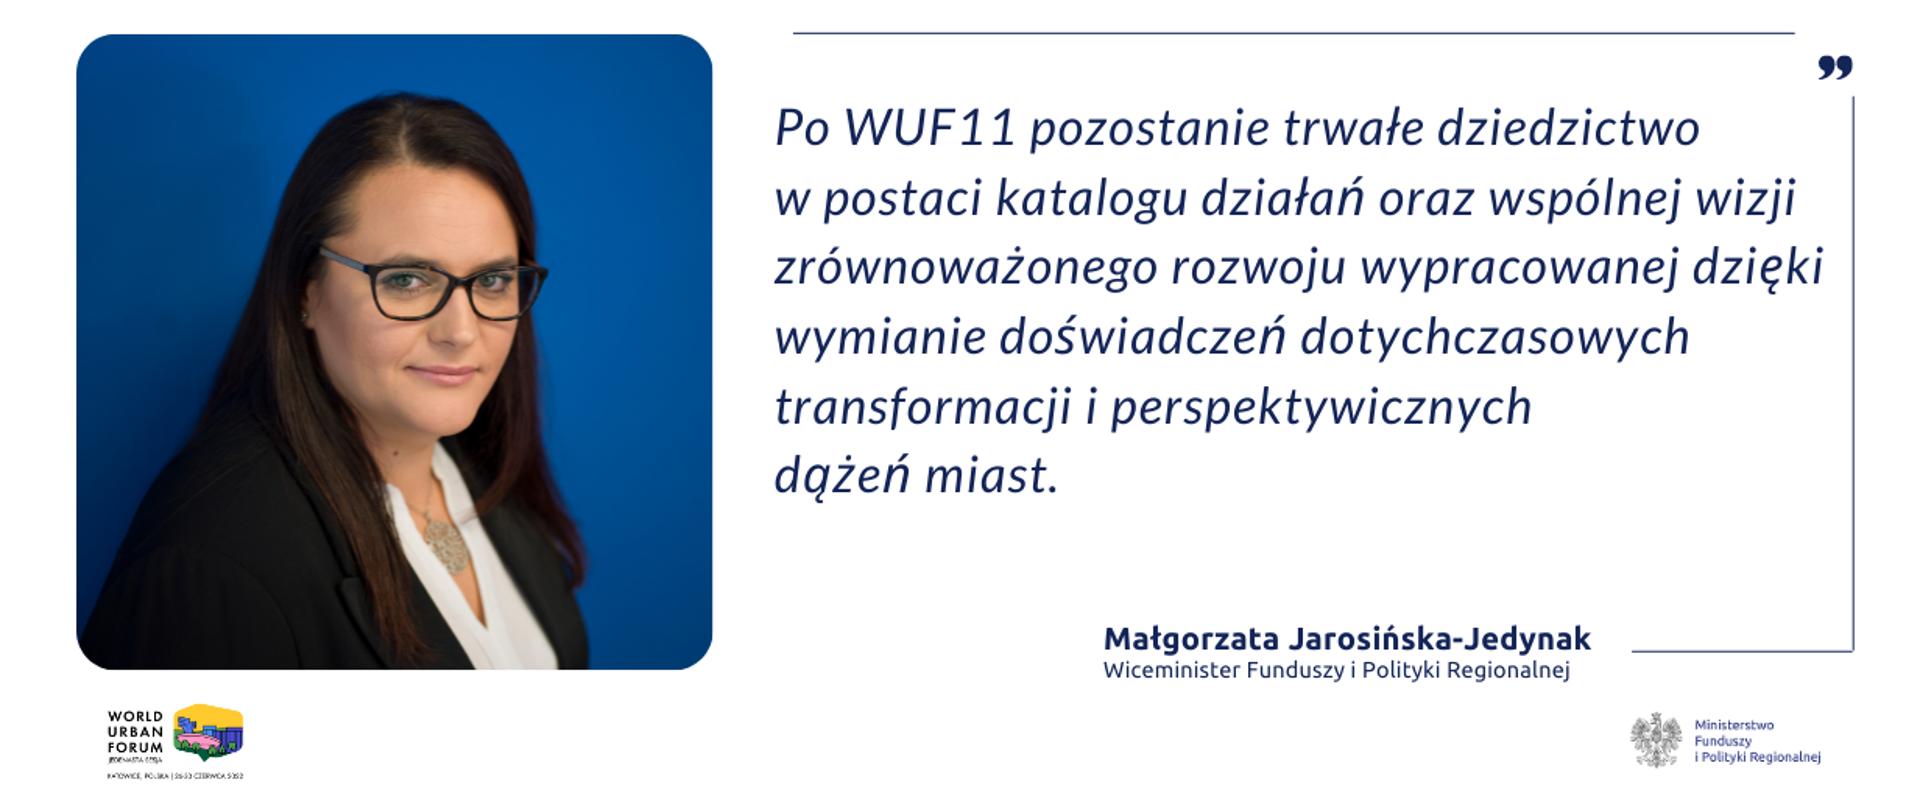 Zdjęcie portretowe minister Małgorzaty Jarosińskiej-Jedynak, cytat: Po WUF11 pozostanie trwałe dziedzictwo w postaci katalogu działań oraz wspólnej wizji zrównoważonego rozwoju wypracowanej dzięki wymianie doświadczeń dotychczasowych transformacji i perspektywicznych dążeń miast.